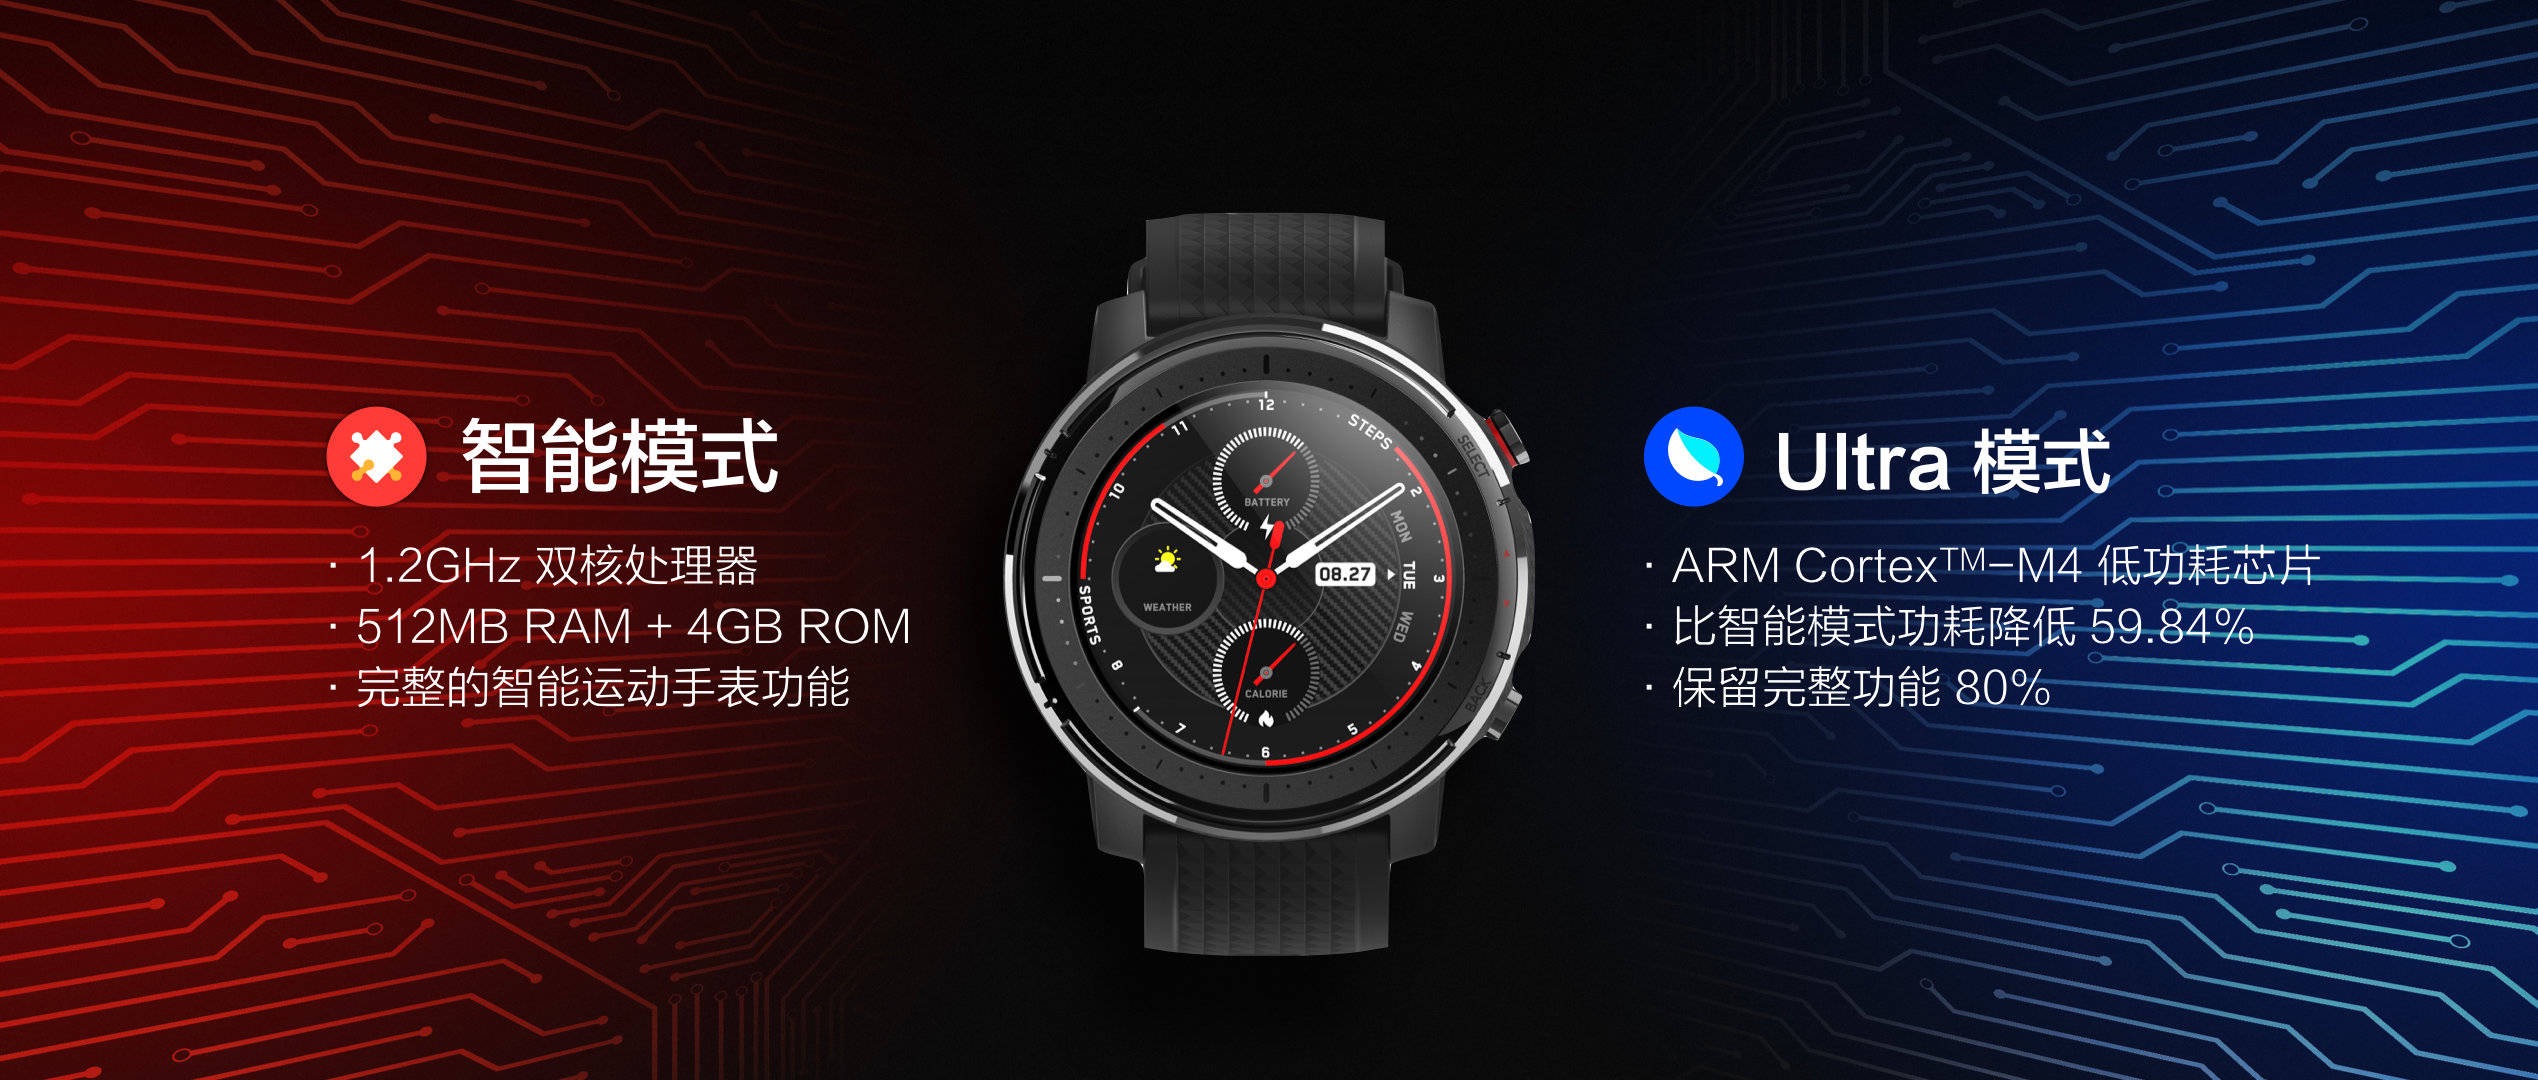 Jam tangan pintar Amazfit 3, fitur, harga, dan spesifikasi. Xiaomi berita terbaru